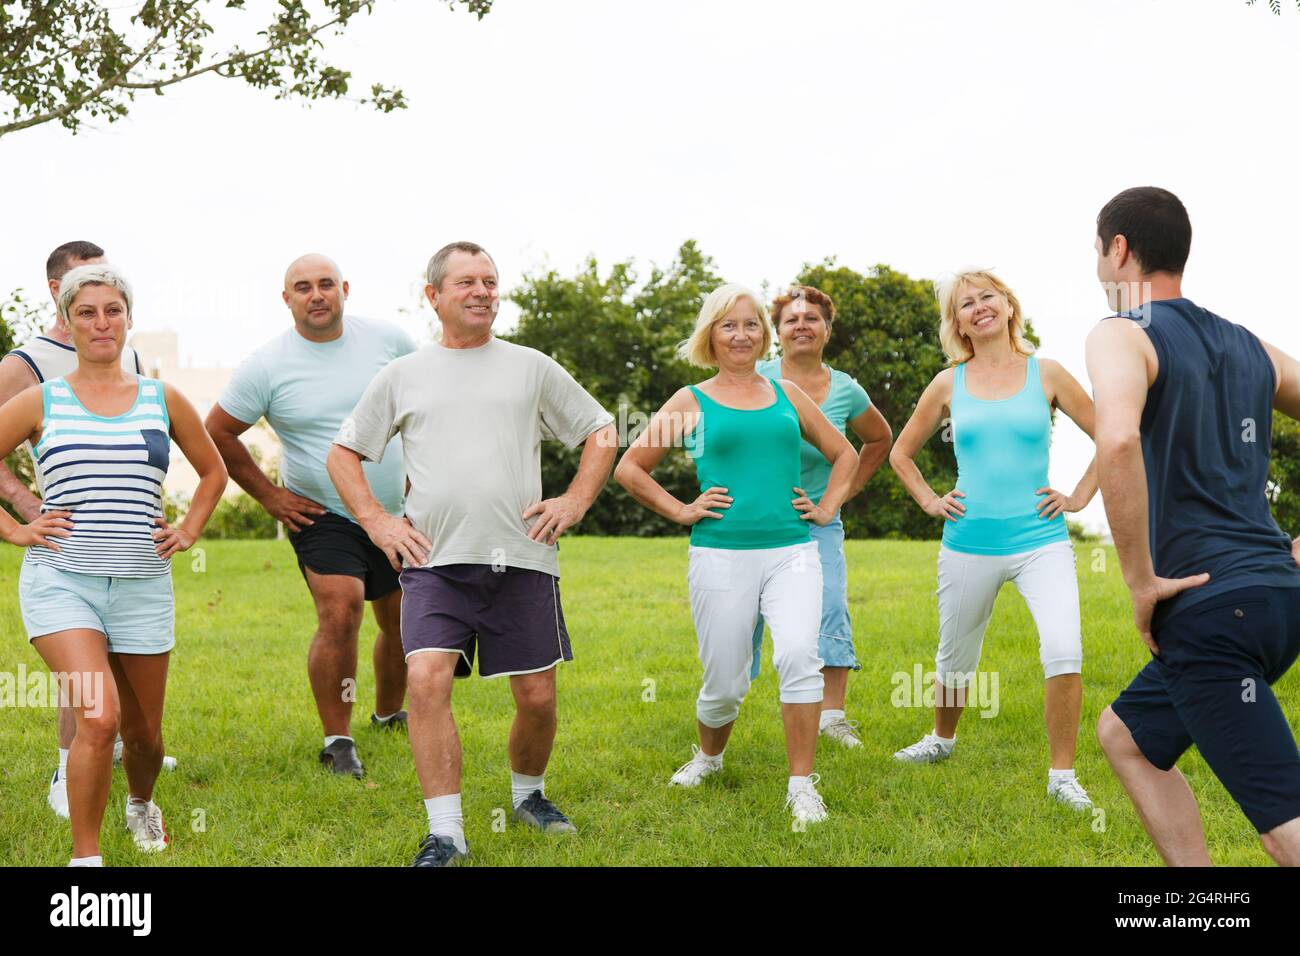 Huit personnes font du jogging dans le parc lors d'une belle journée Banque D'Images